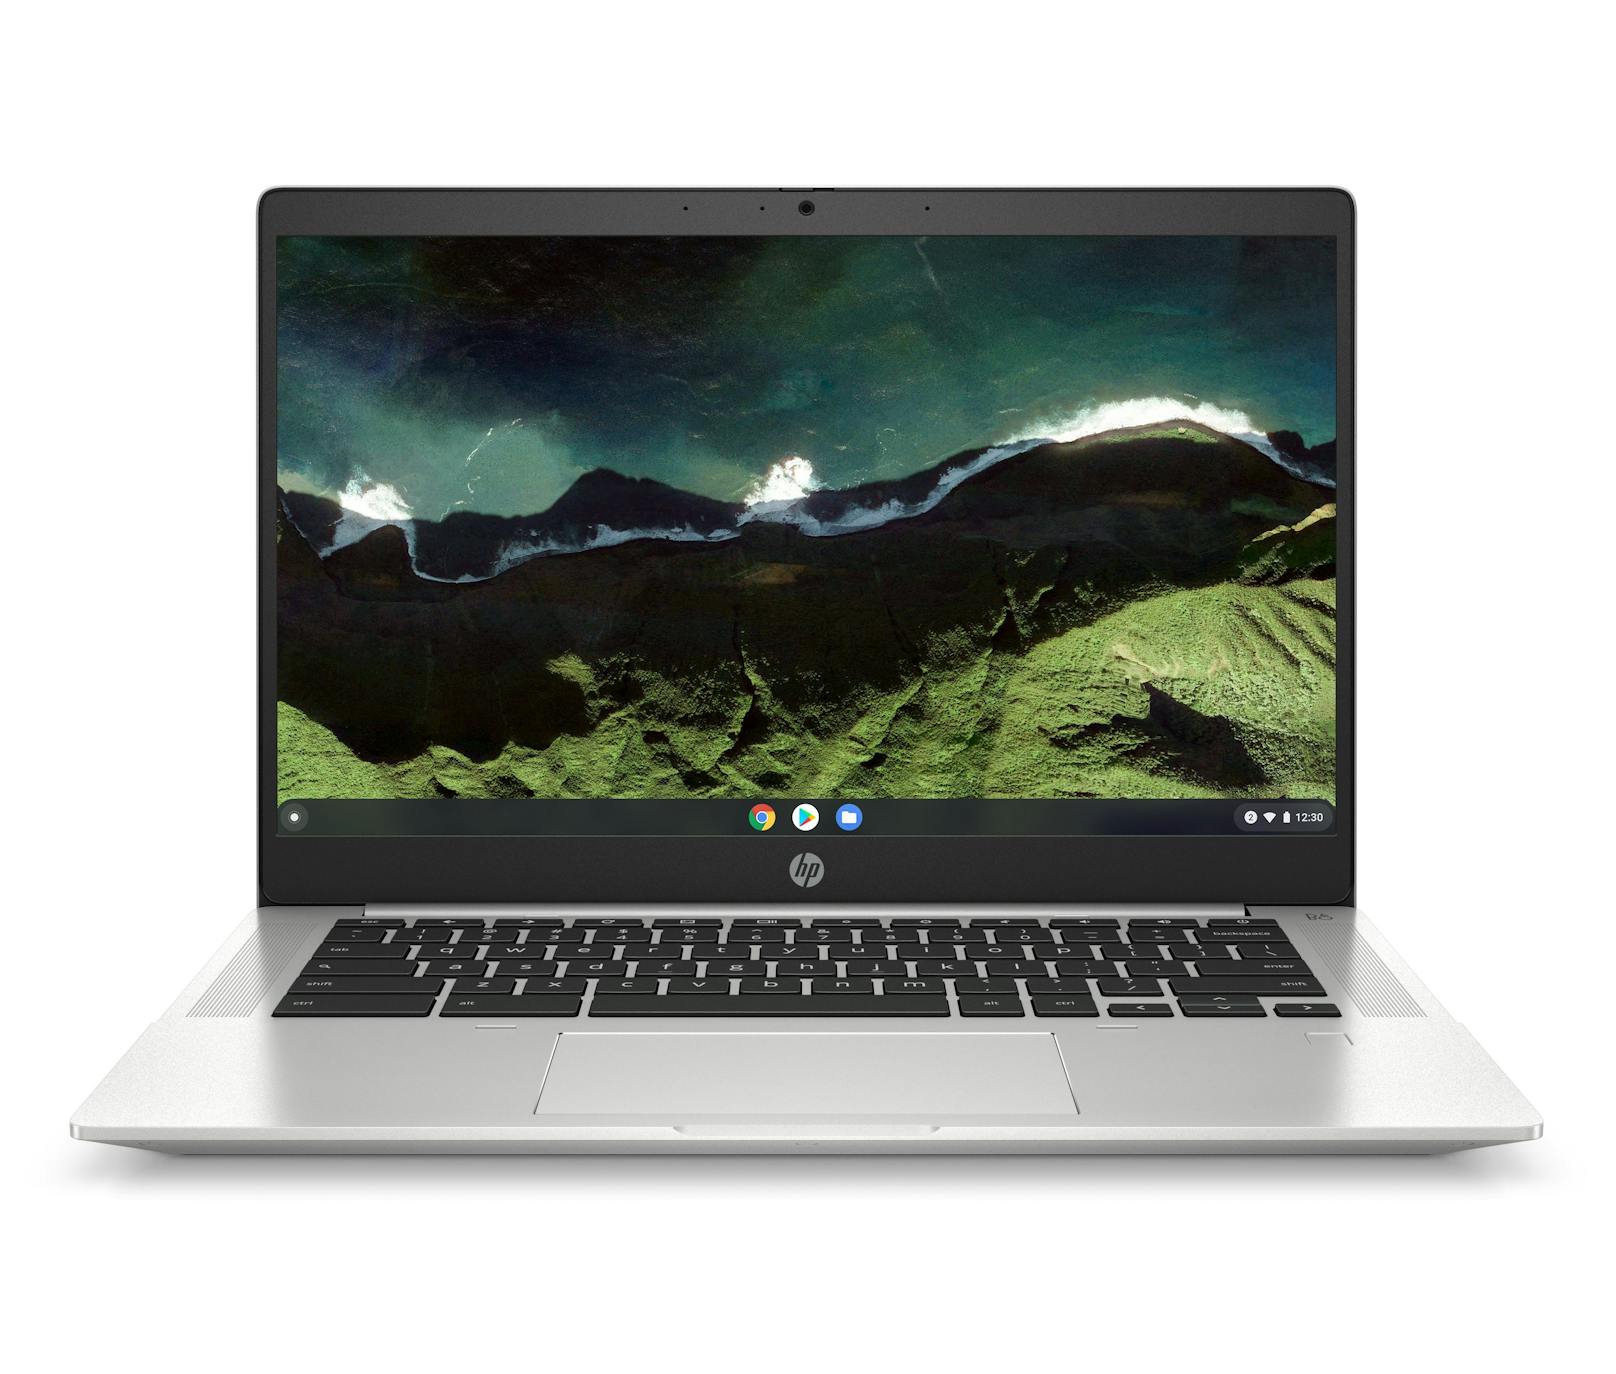 Neues HP Chromebook ermöglicht Cloud-Anwendungen in hybriden Arbeitsumgebungen